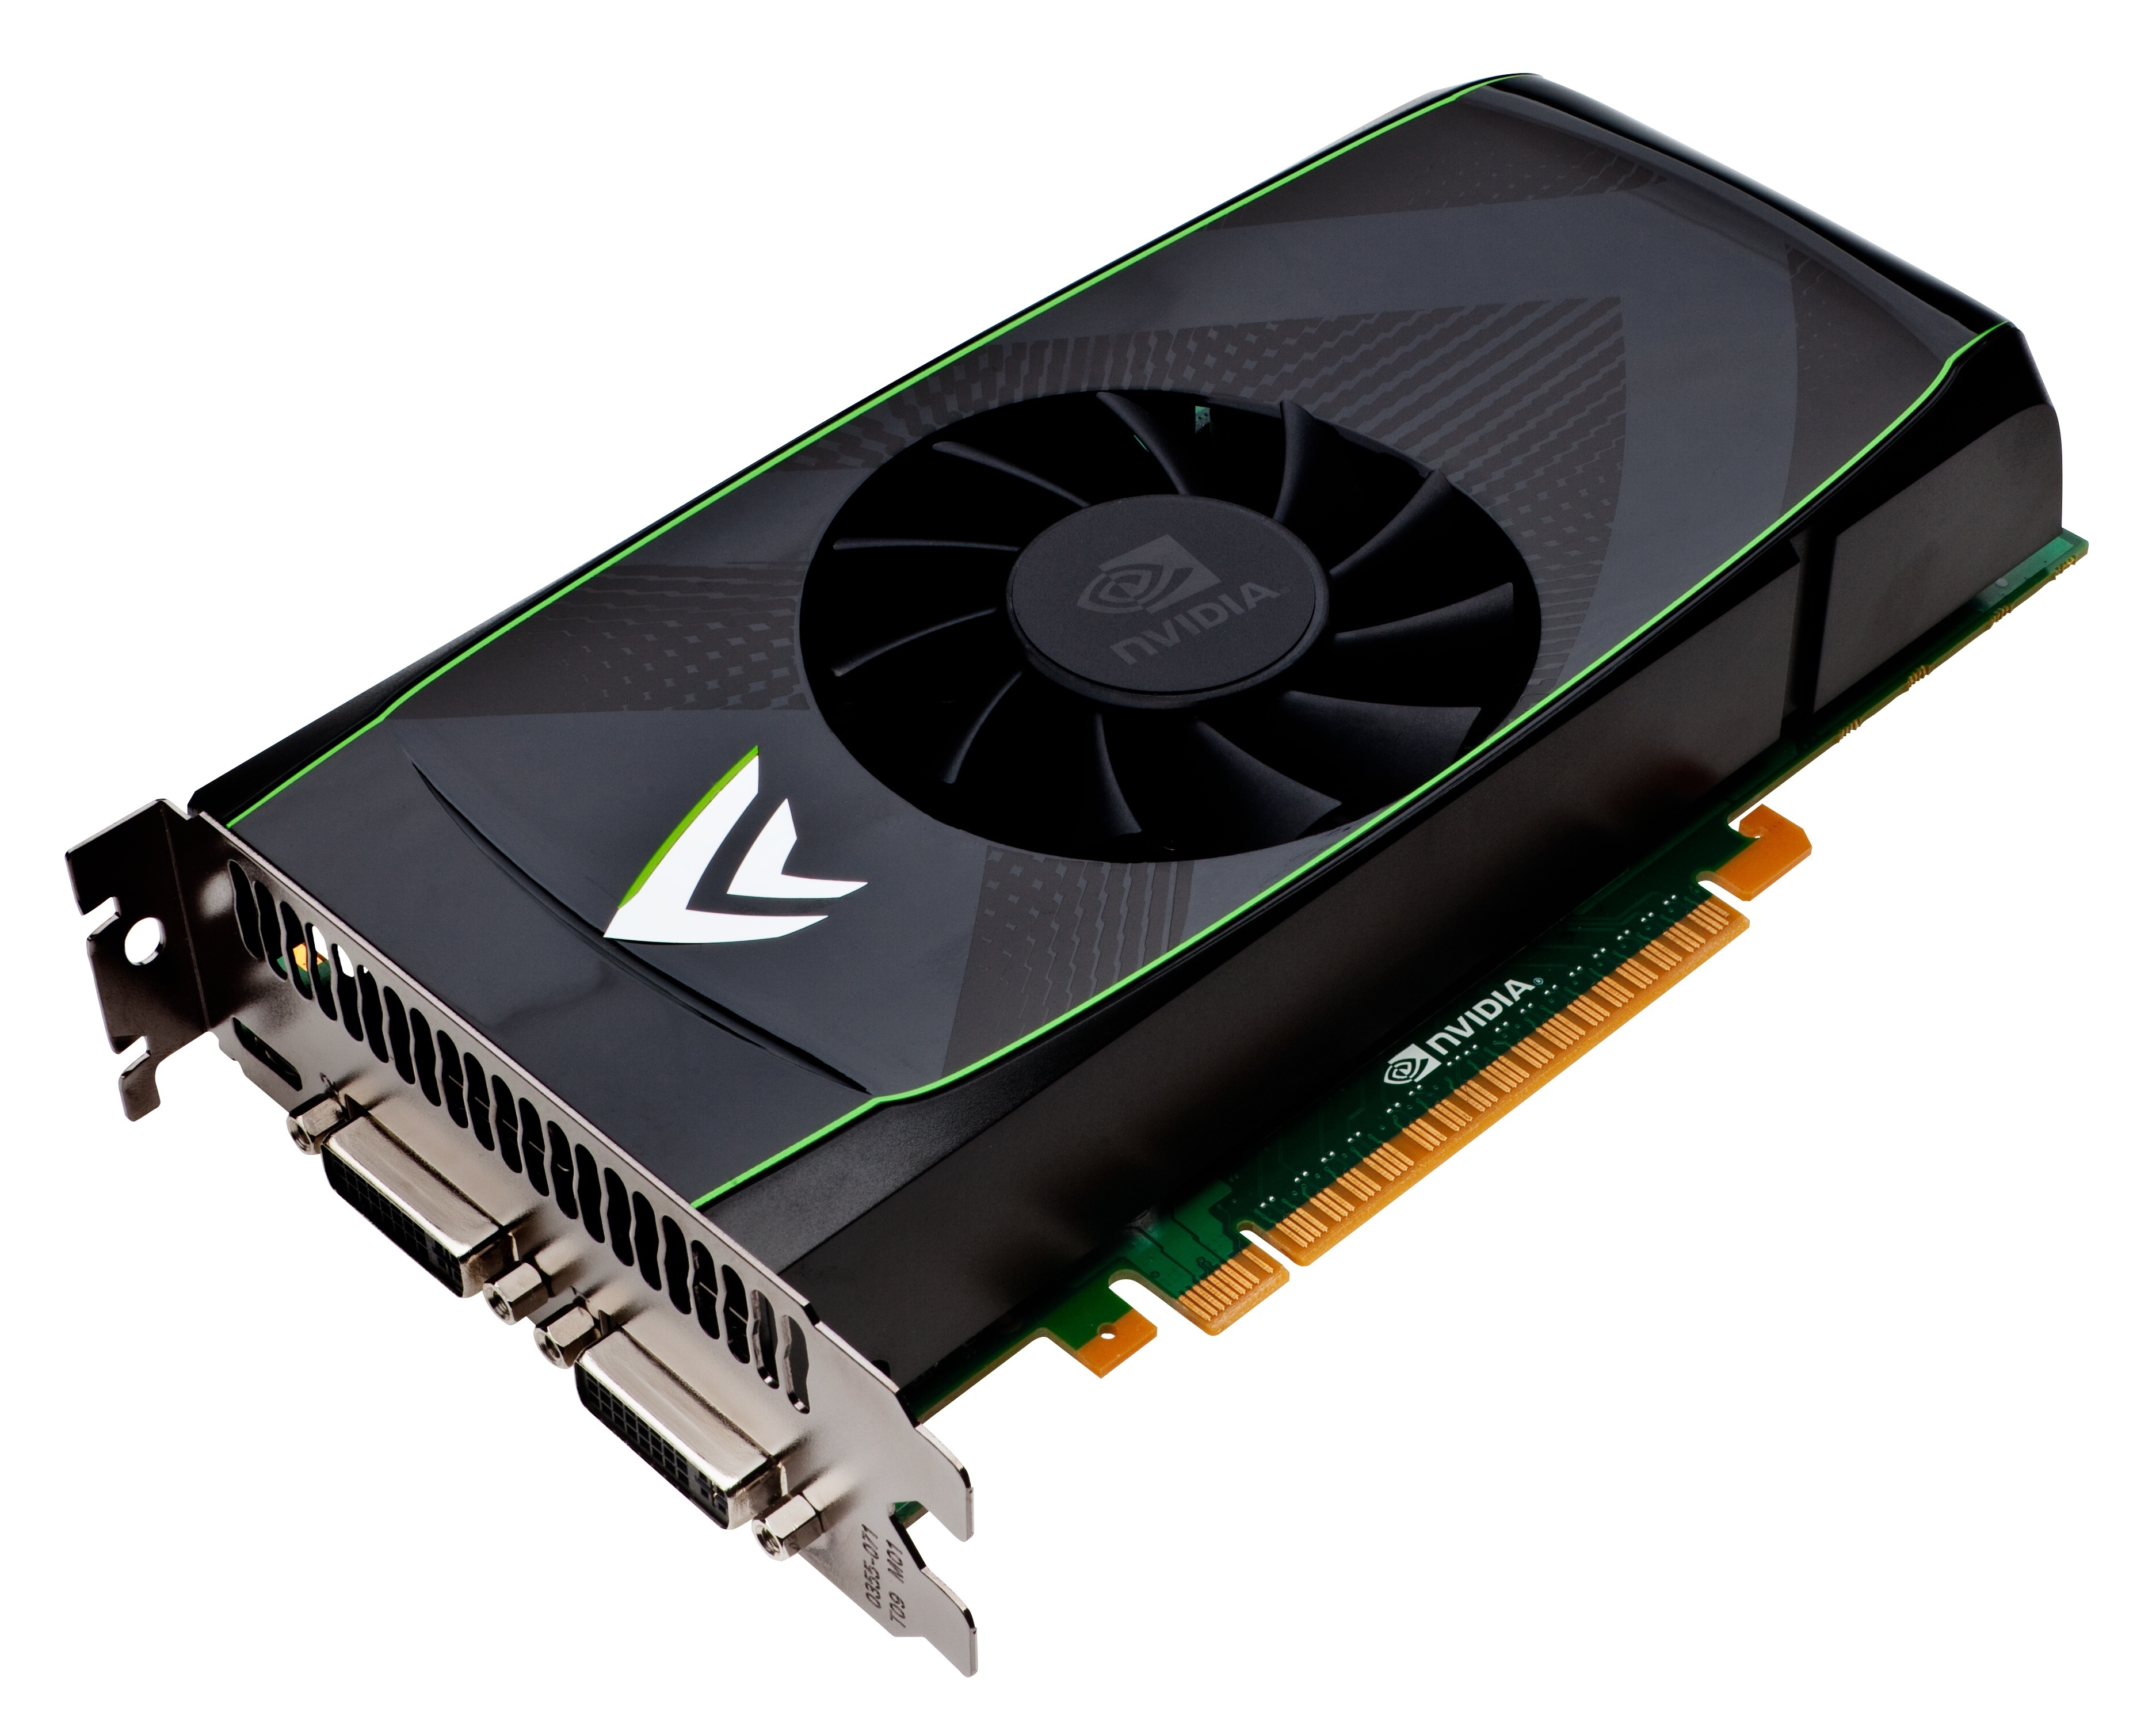 Placa de vídeo: NVIDIA GeForce GTS 450 ou superior
DirectX: Versão 11